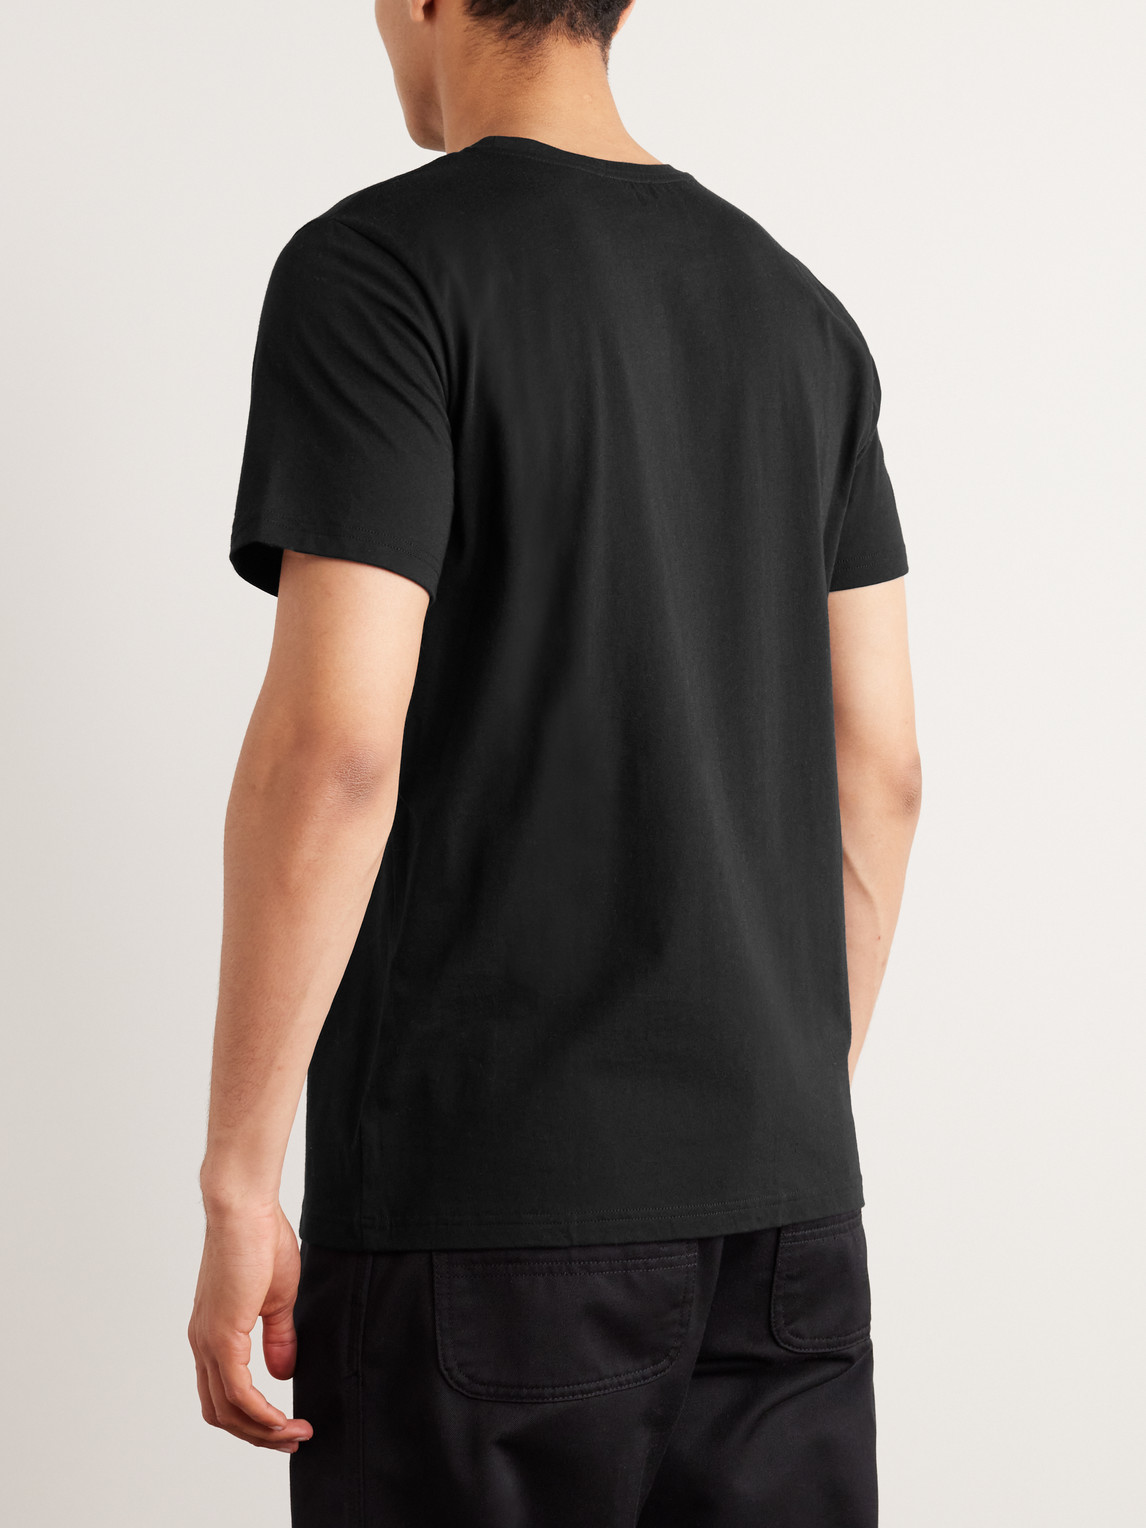 Shop Apc Logo-print Cotton-jersey T-shirt In Black